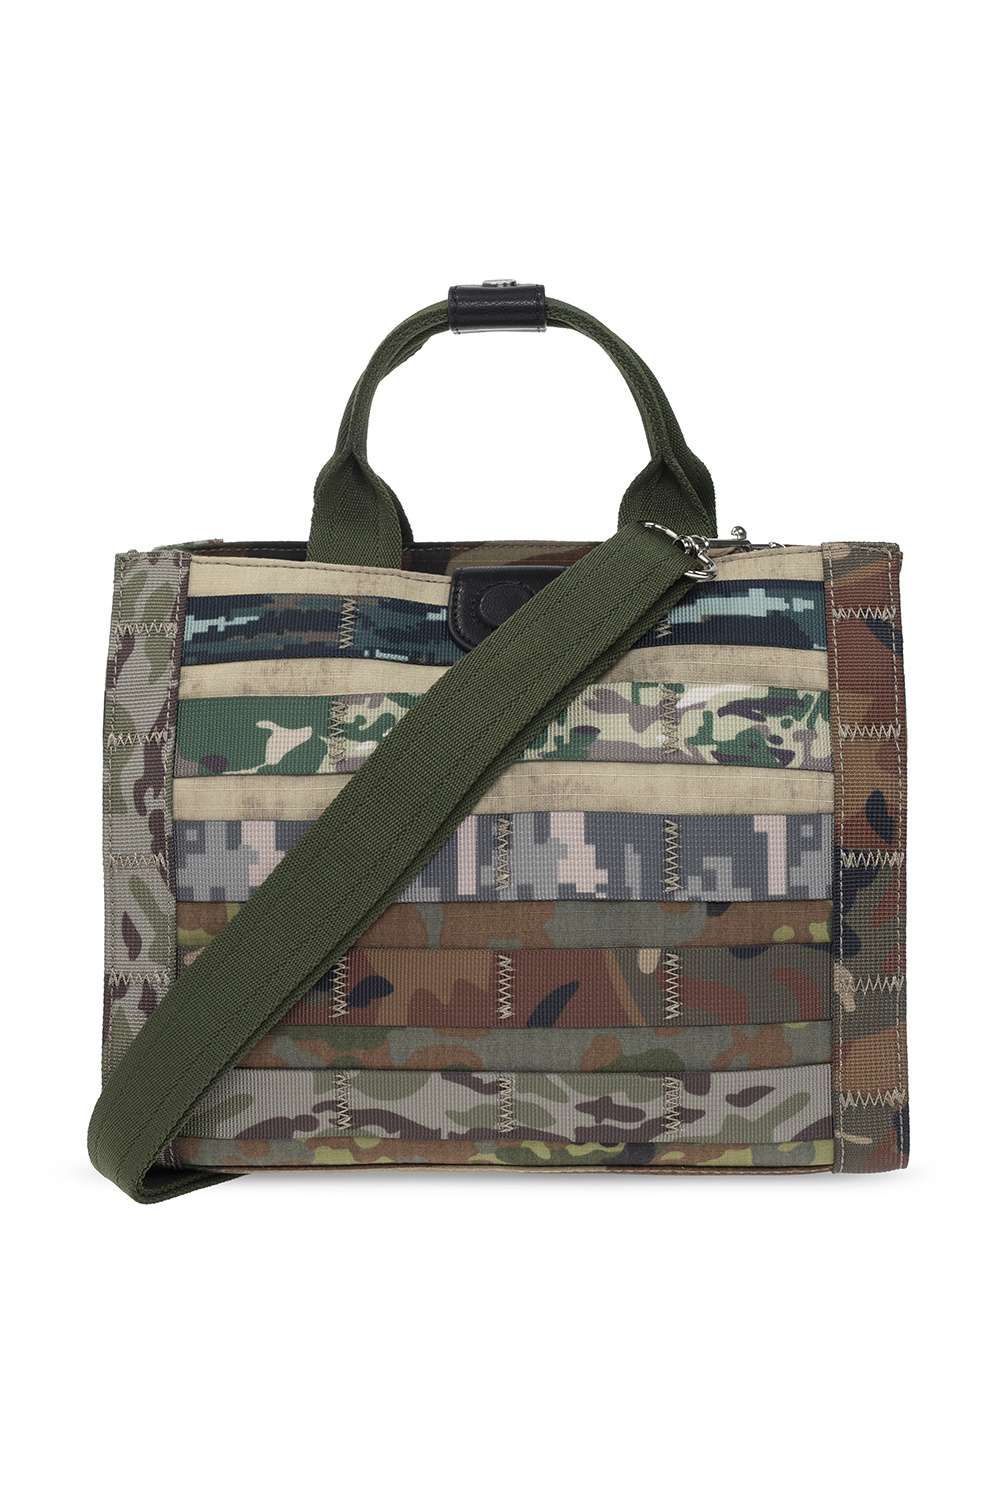 engagement Independent Spread StclaircomoShops | Women's Bags | Diesel 'Sanbonny' shoulder bag | Backpack  CARPISA Daily BTA55007942 Olive 34B